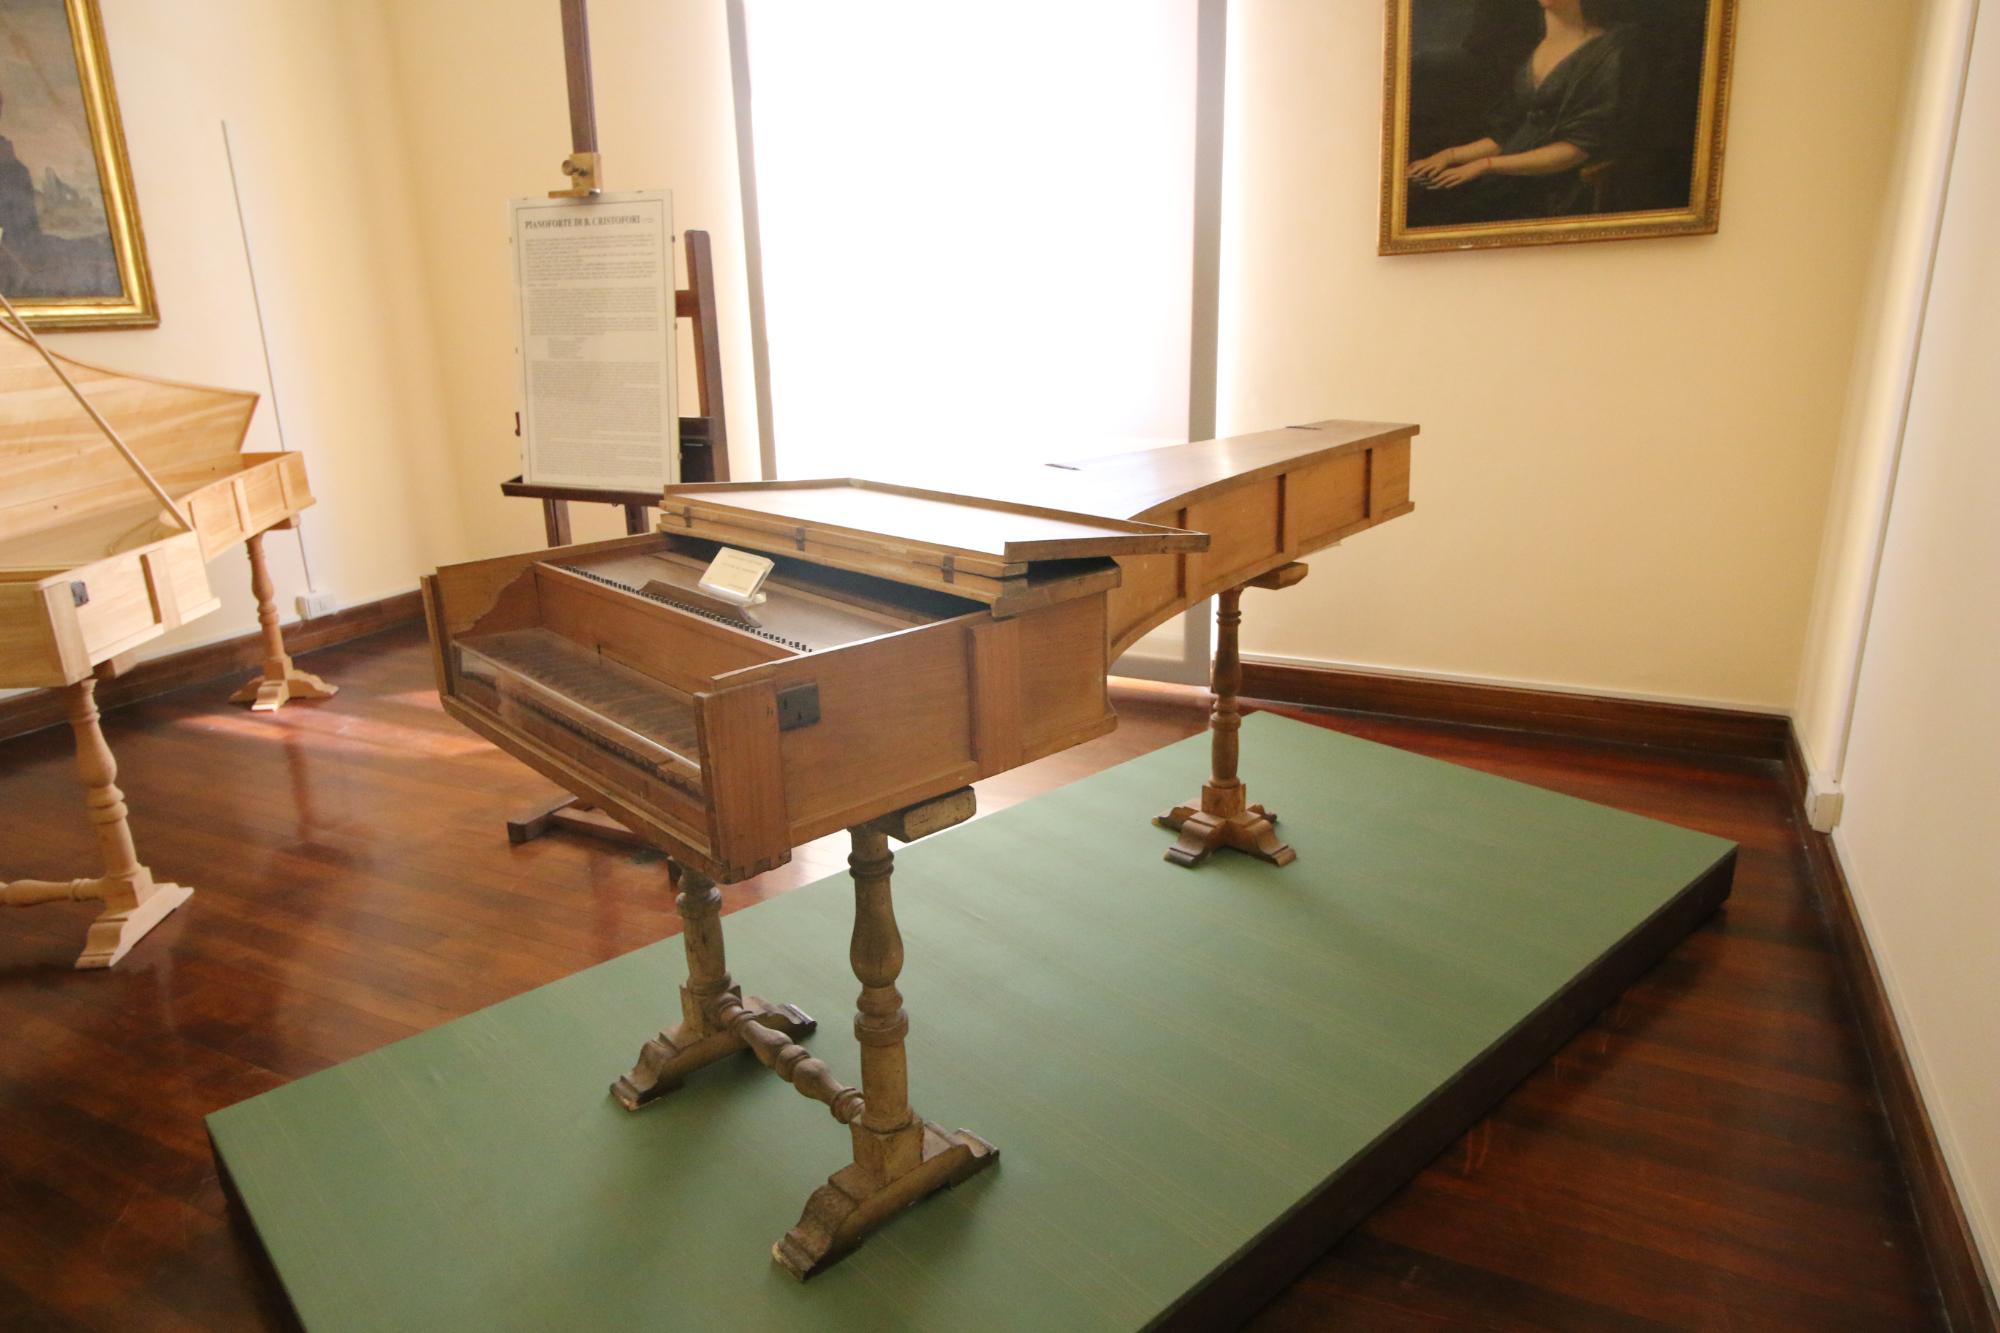 Museo degli Strumenti musicali dell’Accademia di Santa Cecilia